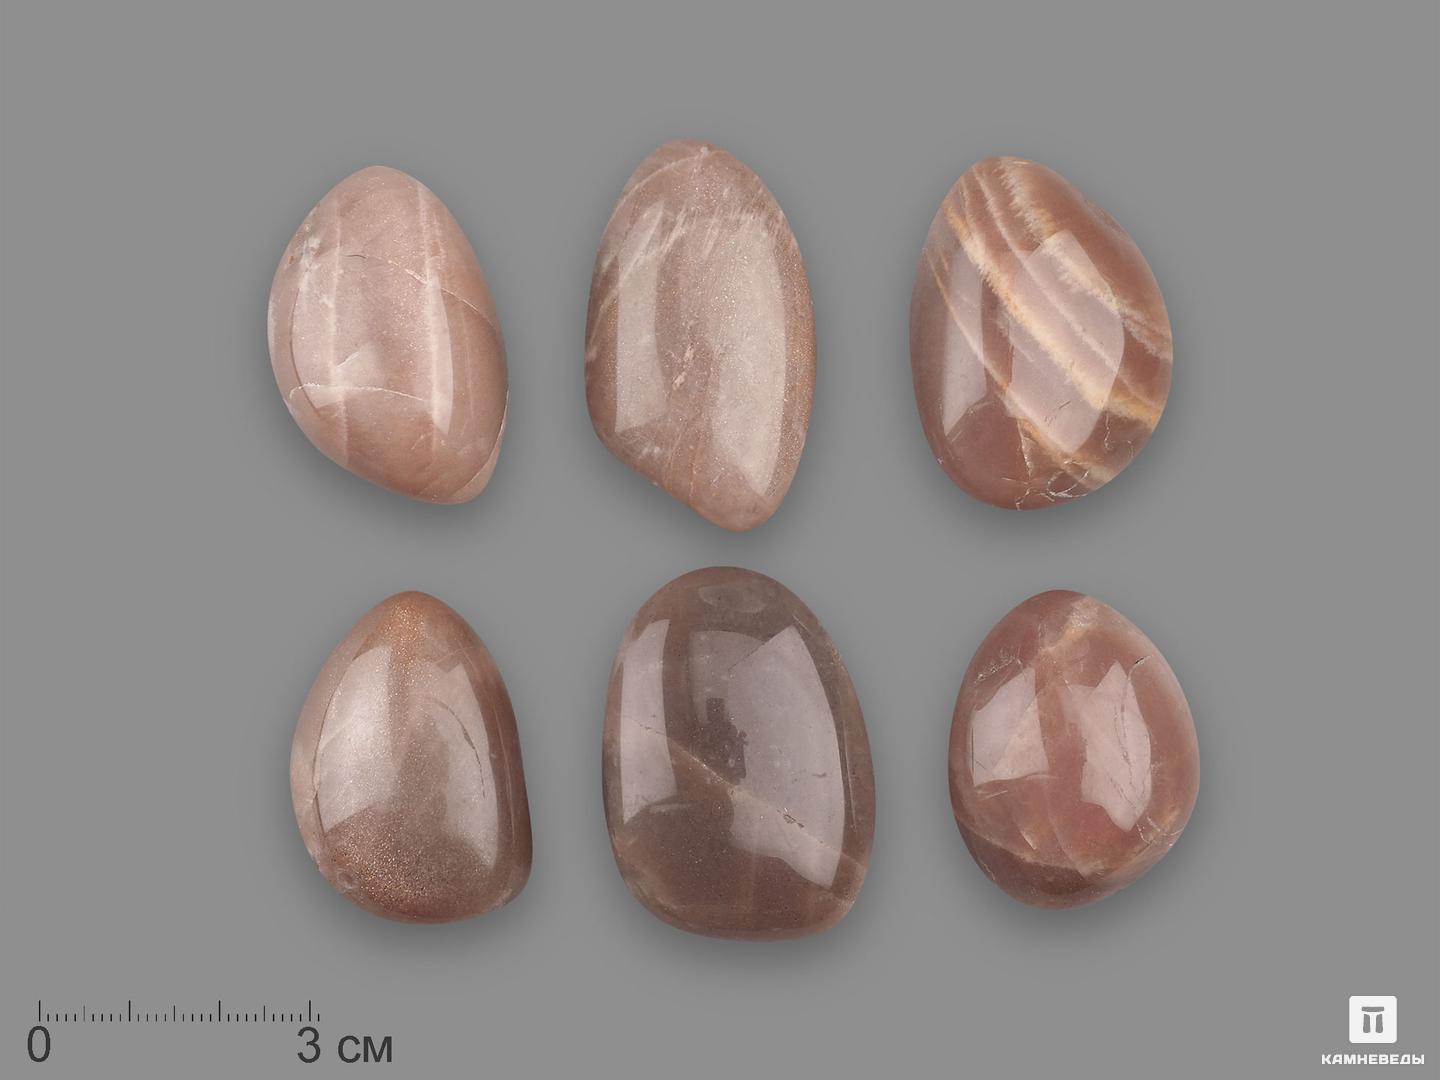 Лунный камень (адуляр) с эффектом солнечного камня, крупная галтовка 3-4,5 см (30-35 г)